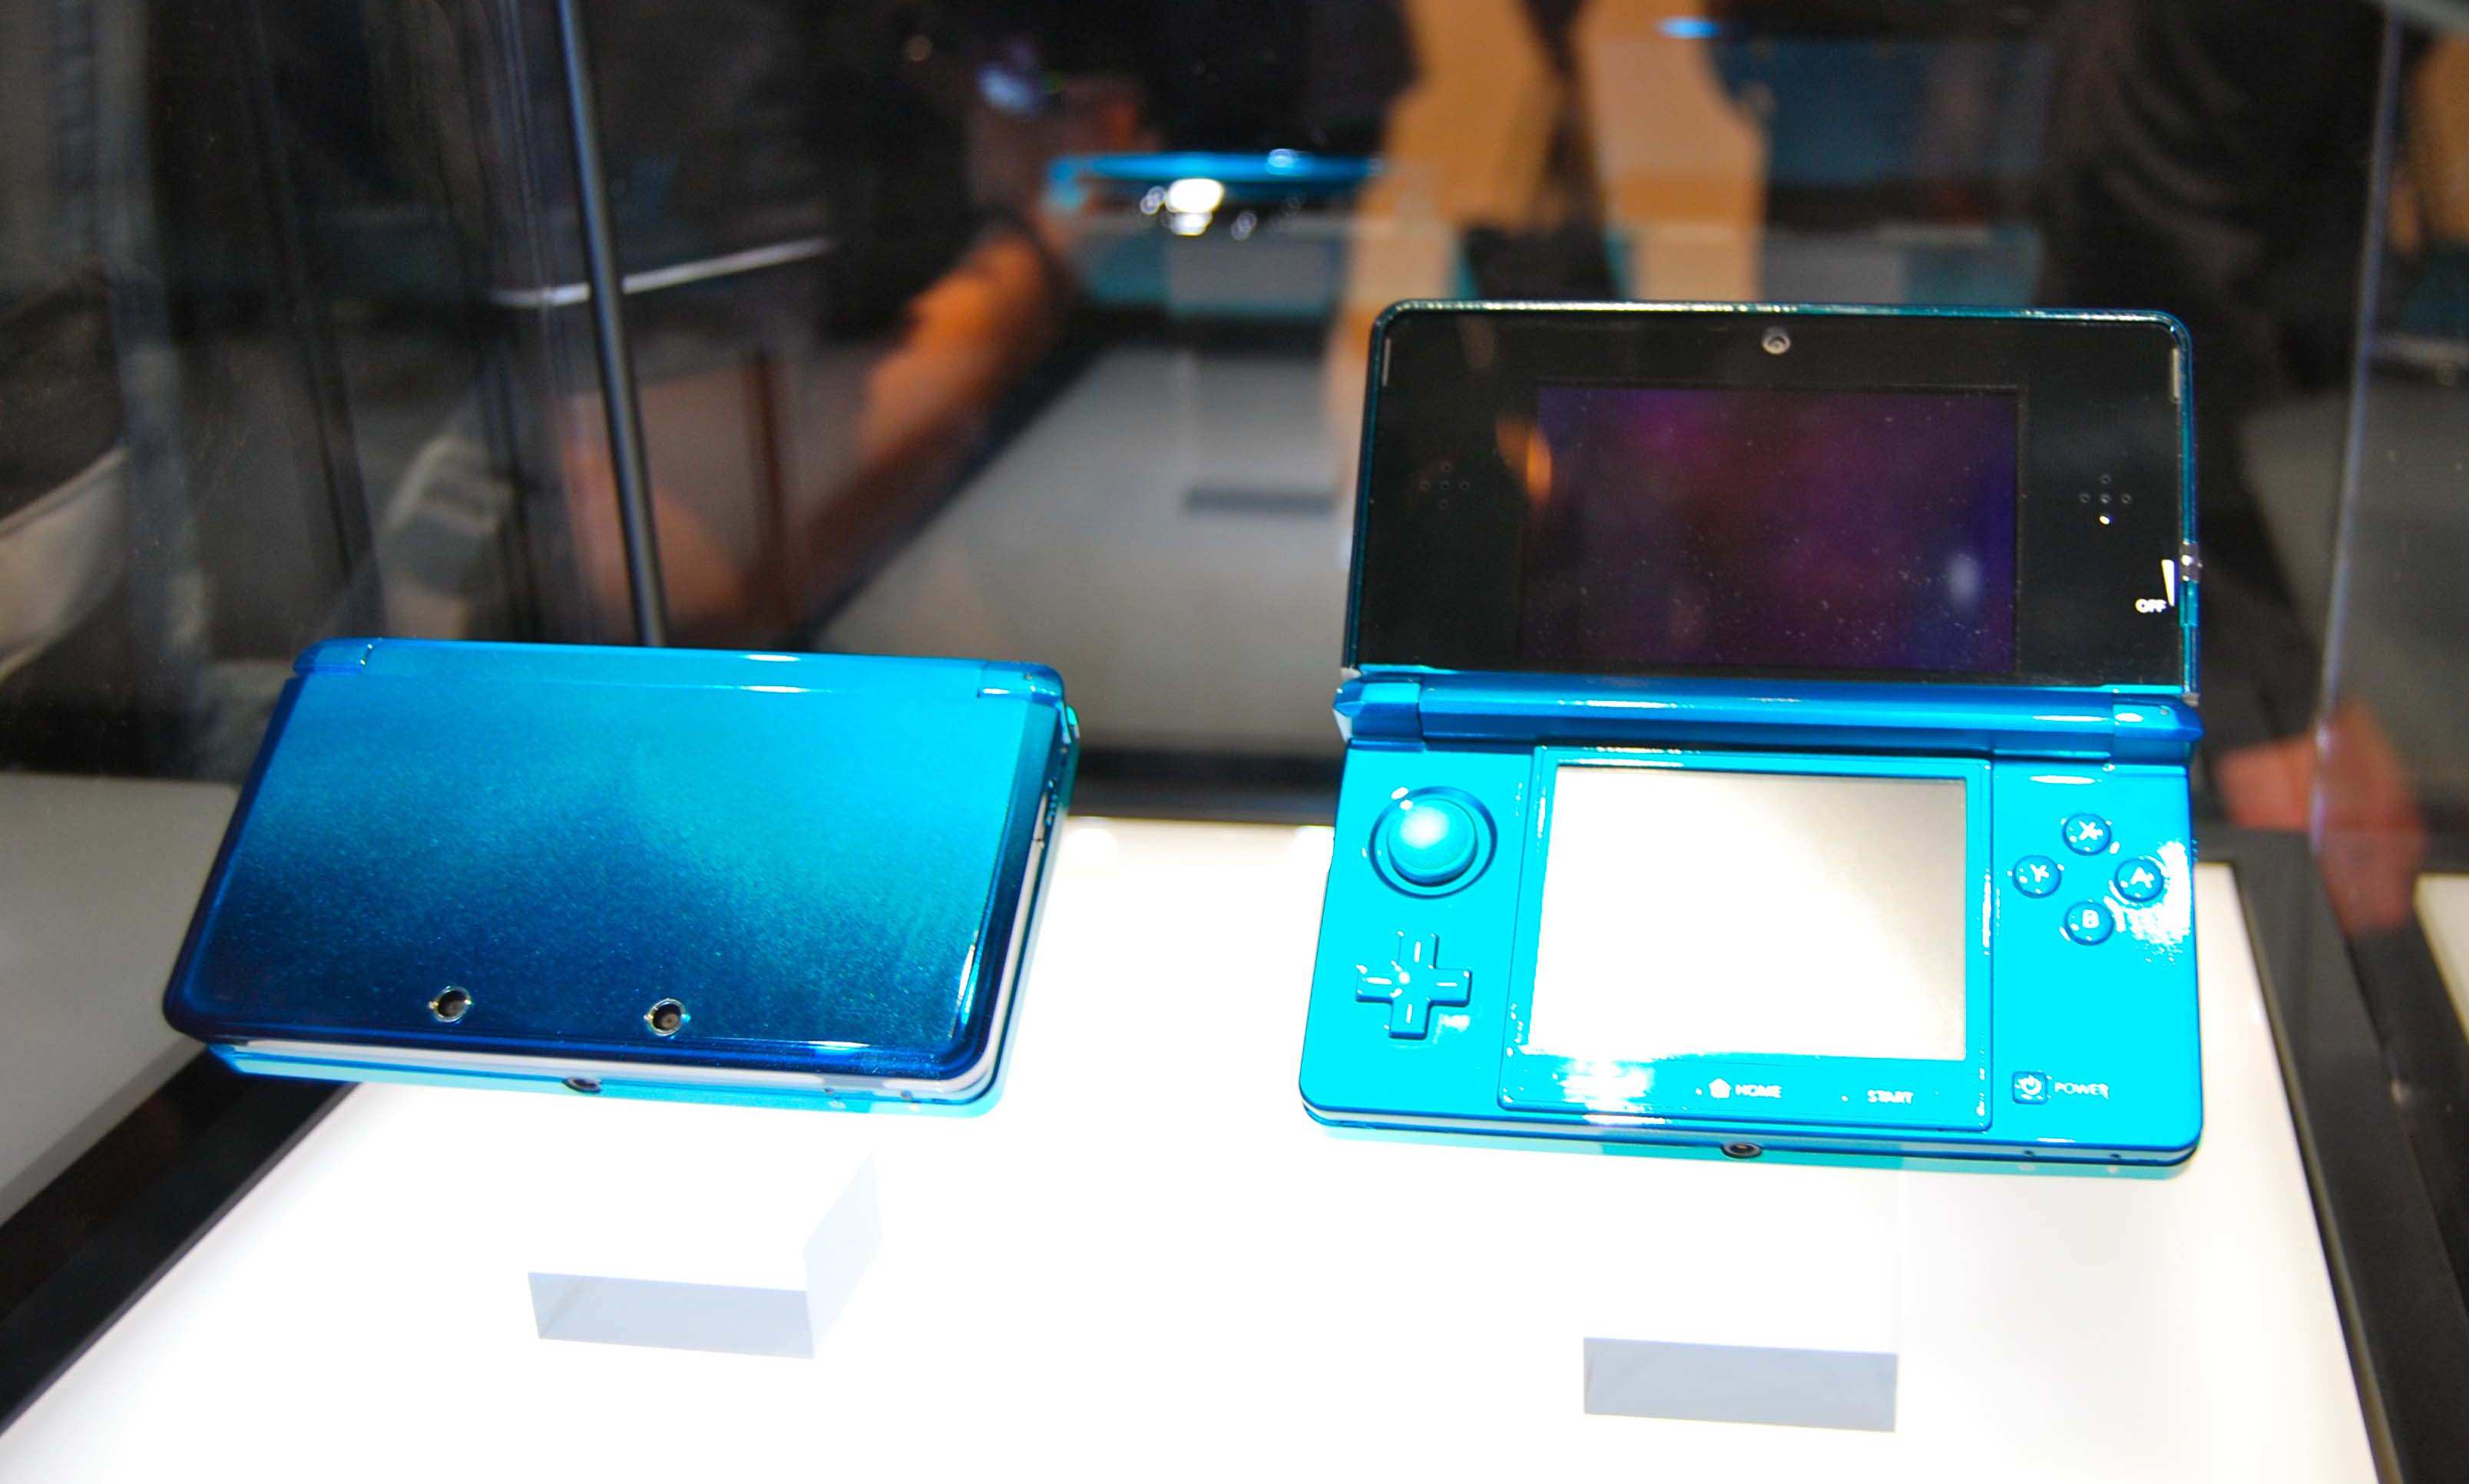 El presidente de NIS América cree que 3DS aguantará en occidente 3 años más